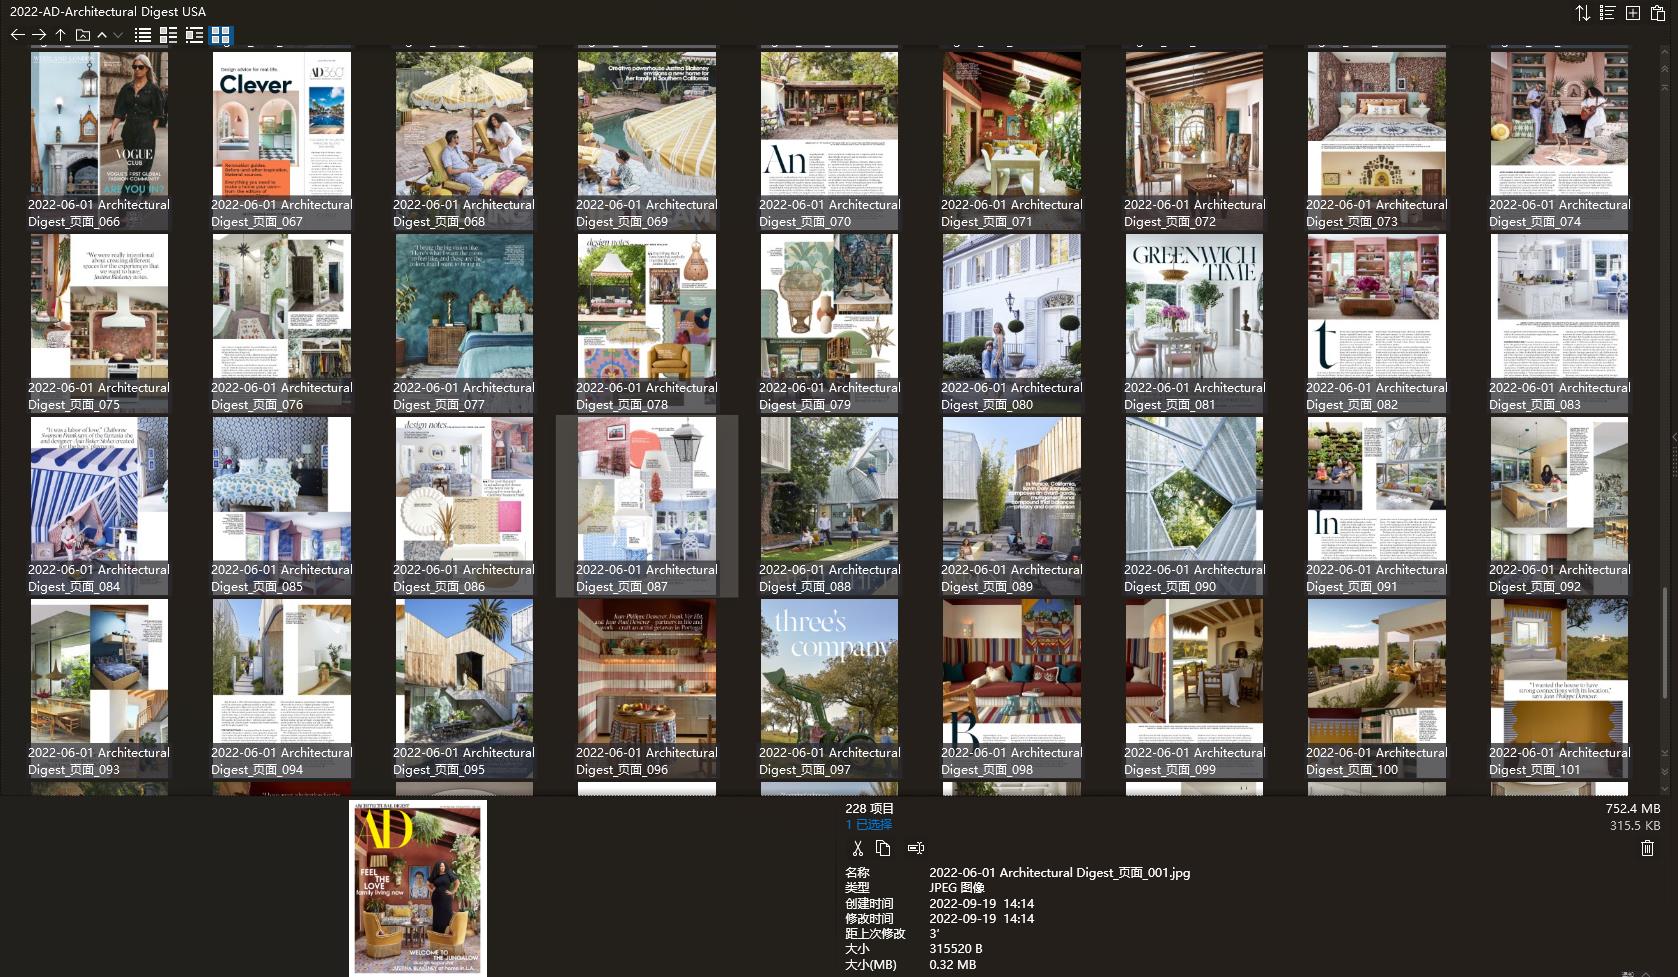 室内设计杂志AD Architectural Digest,软装设计杂志AD Architectural Digest,室内设计杂志,软装设计杂志,AD设计电子杂志,杂志下载,AD杂志合集,安邸,安邸杂志